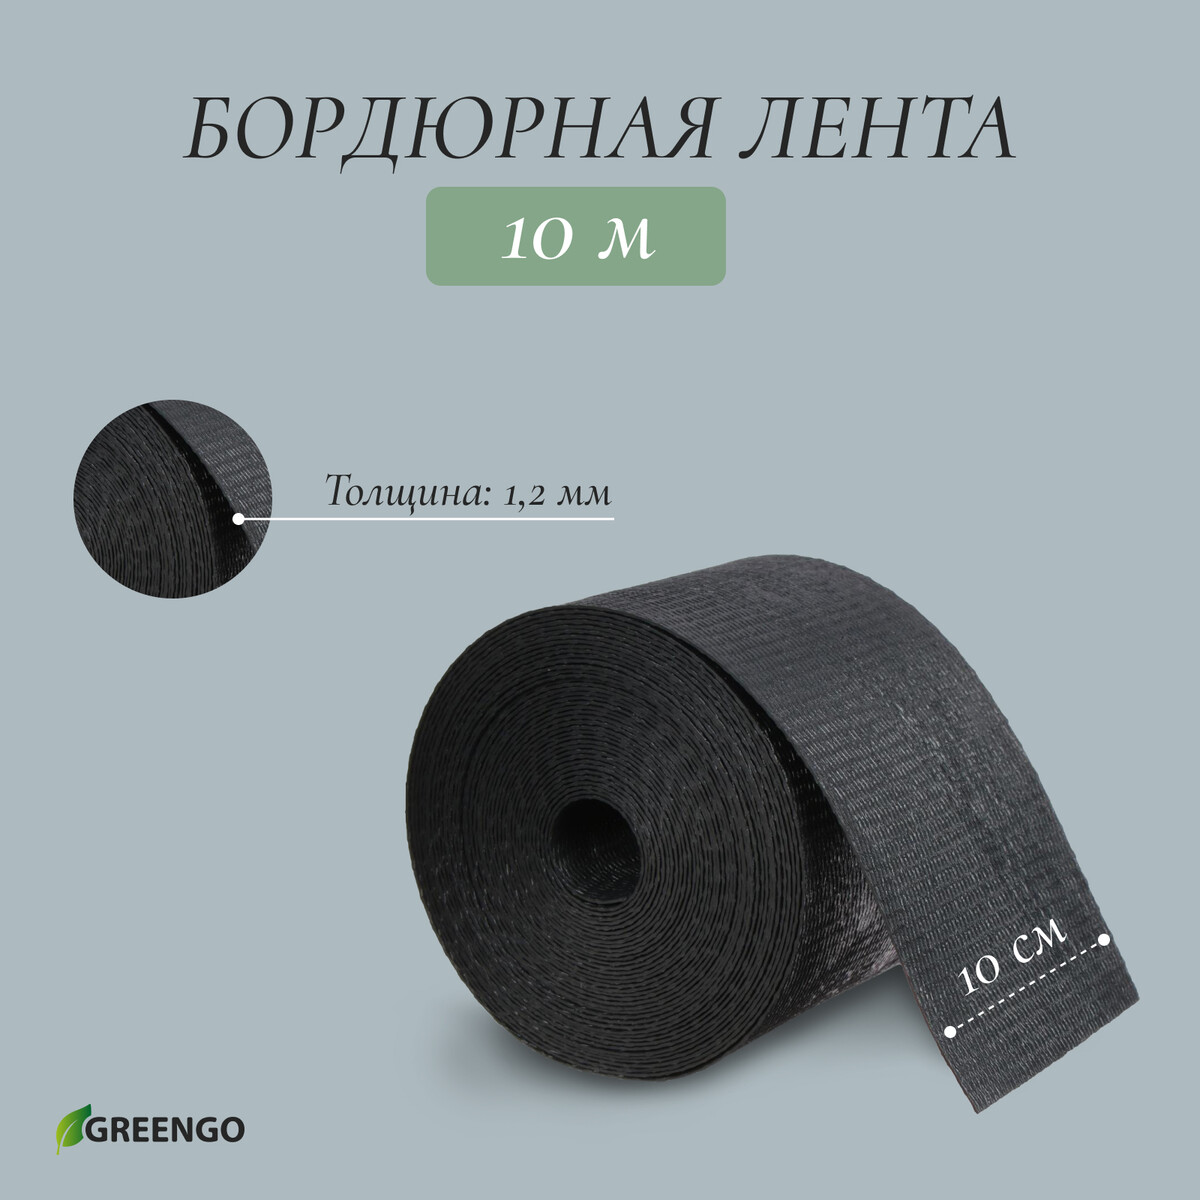 Лента бордюрная, 0,1 × 10 м, толщина 1,2 мм, пластиковая, черная, greengo